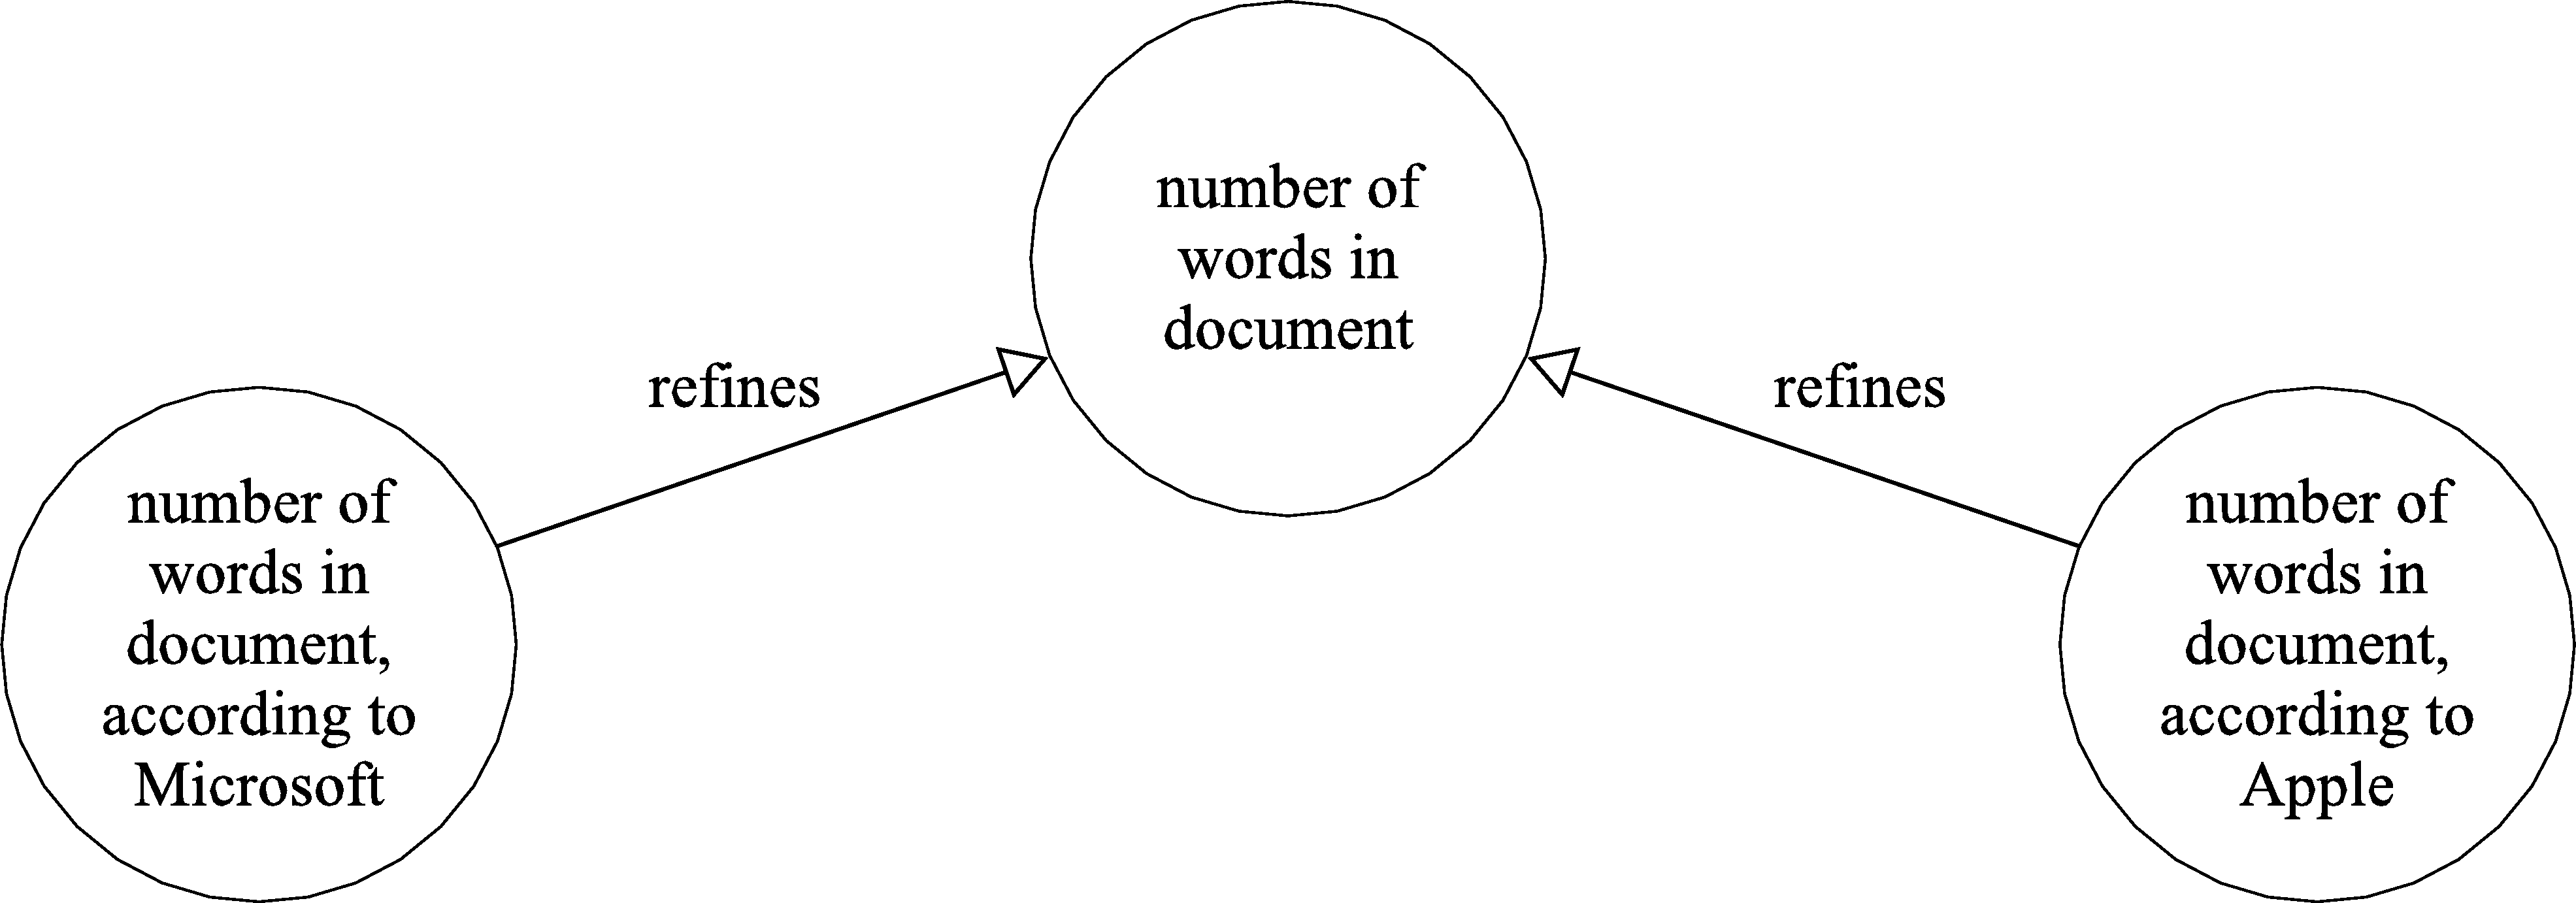 Example 1 diagram